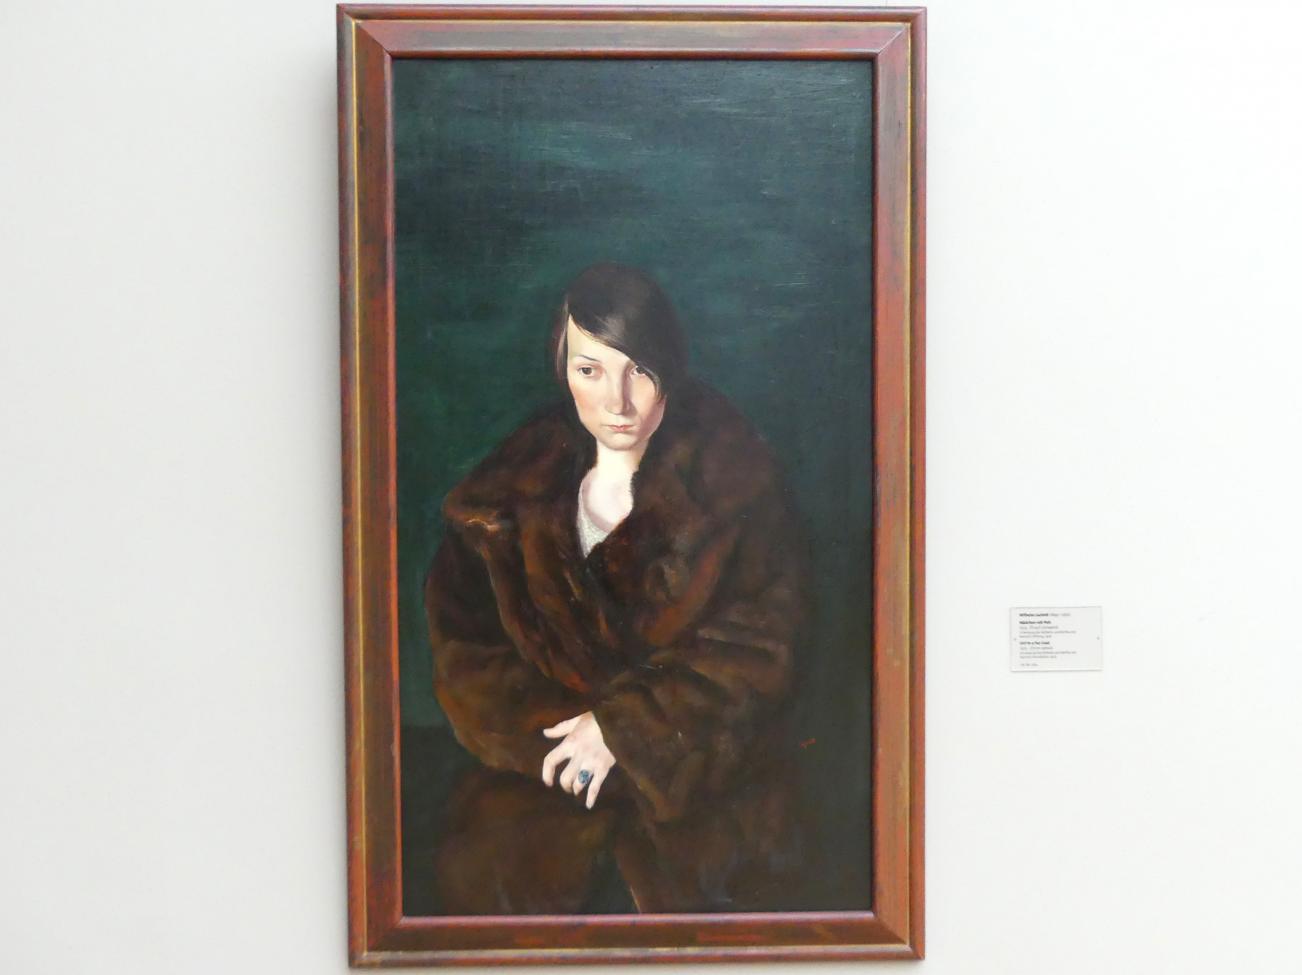 Wilhelm Lachnit (1922–1945), Mädchen mit Pelz, Dresden, Albertinum, Galerie Neue Meister, 2. Obergeschoss, Saal 15, 1925, Bild 1/2